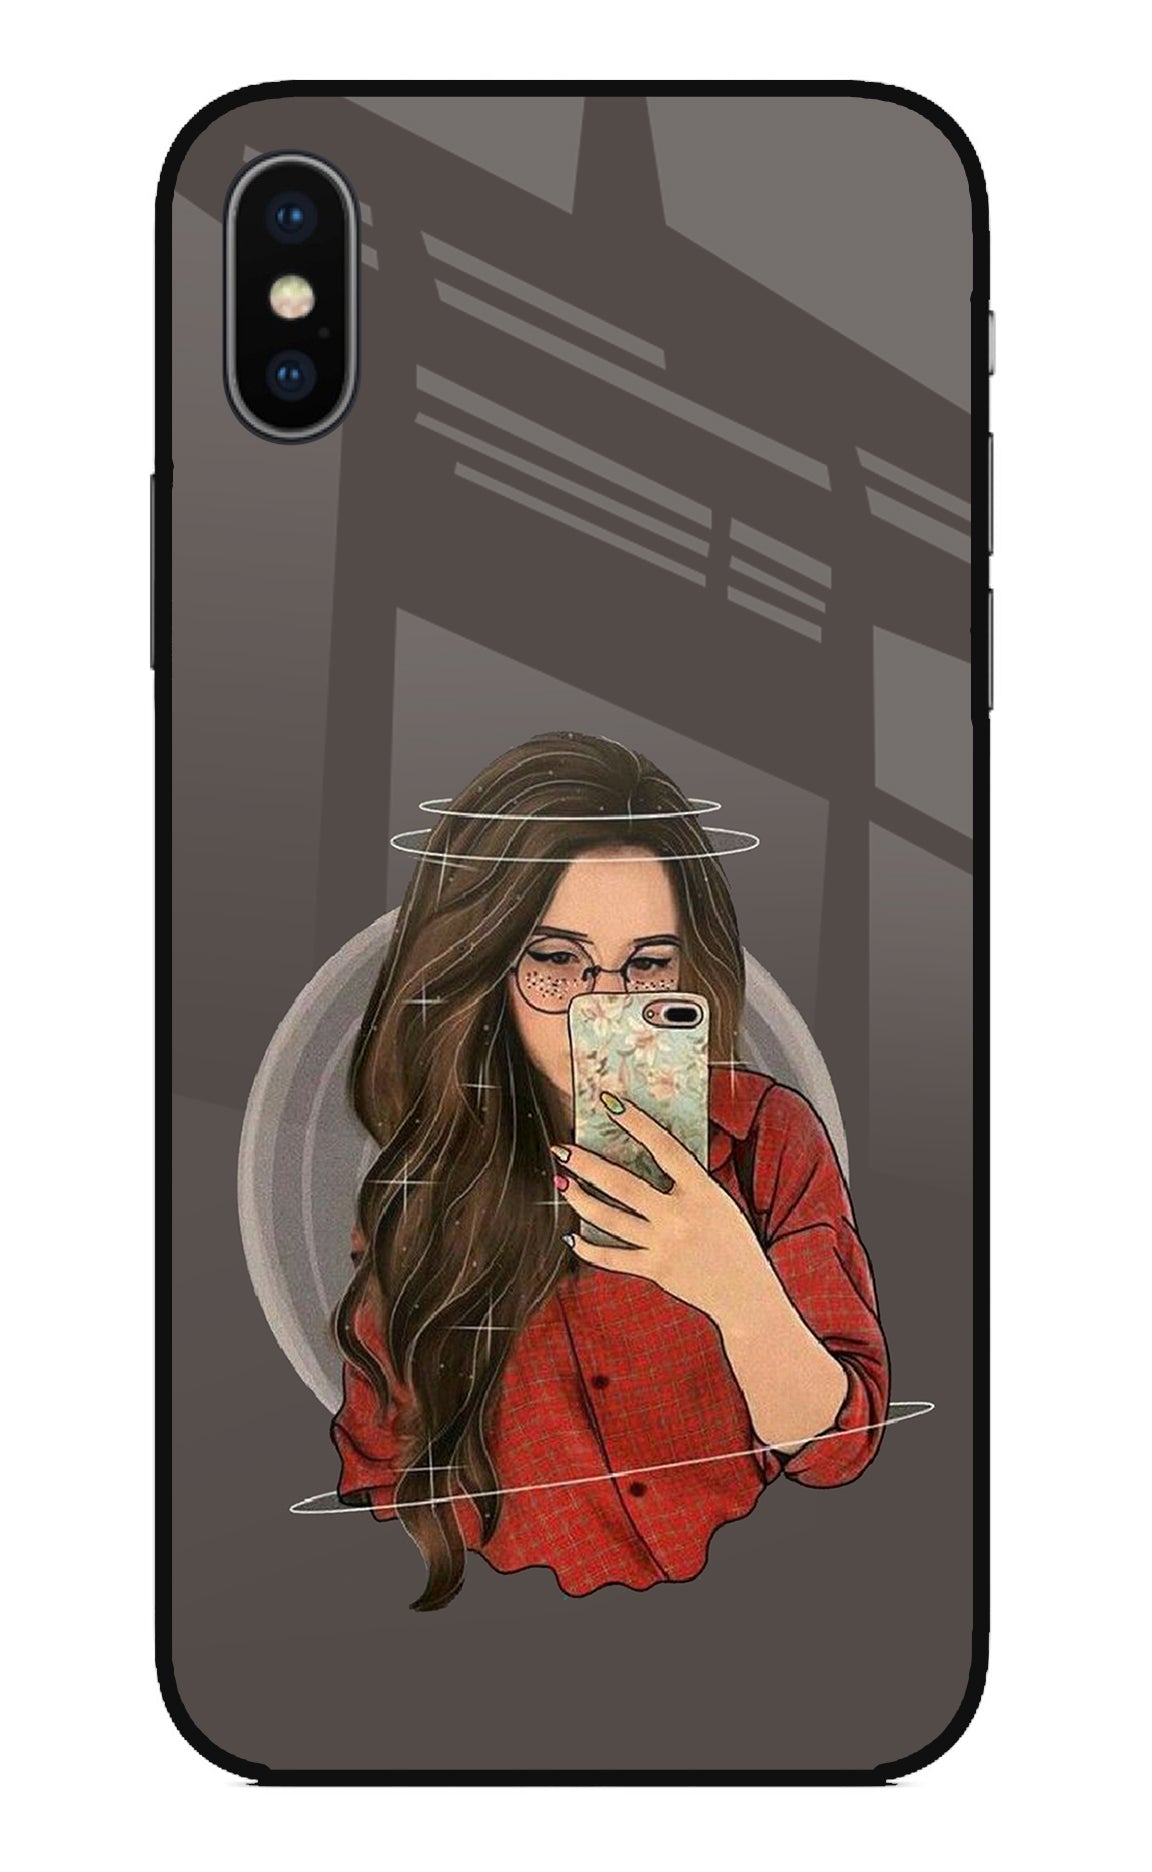 Selfie Queen iPhone X Back Cover